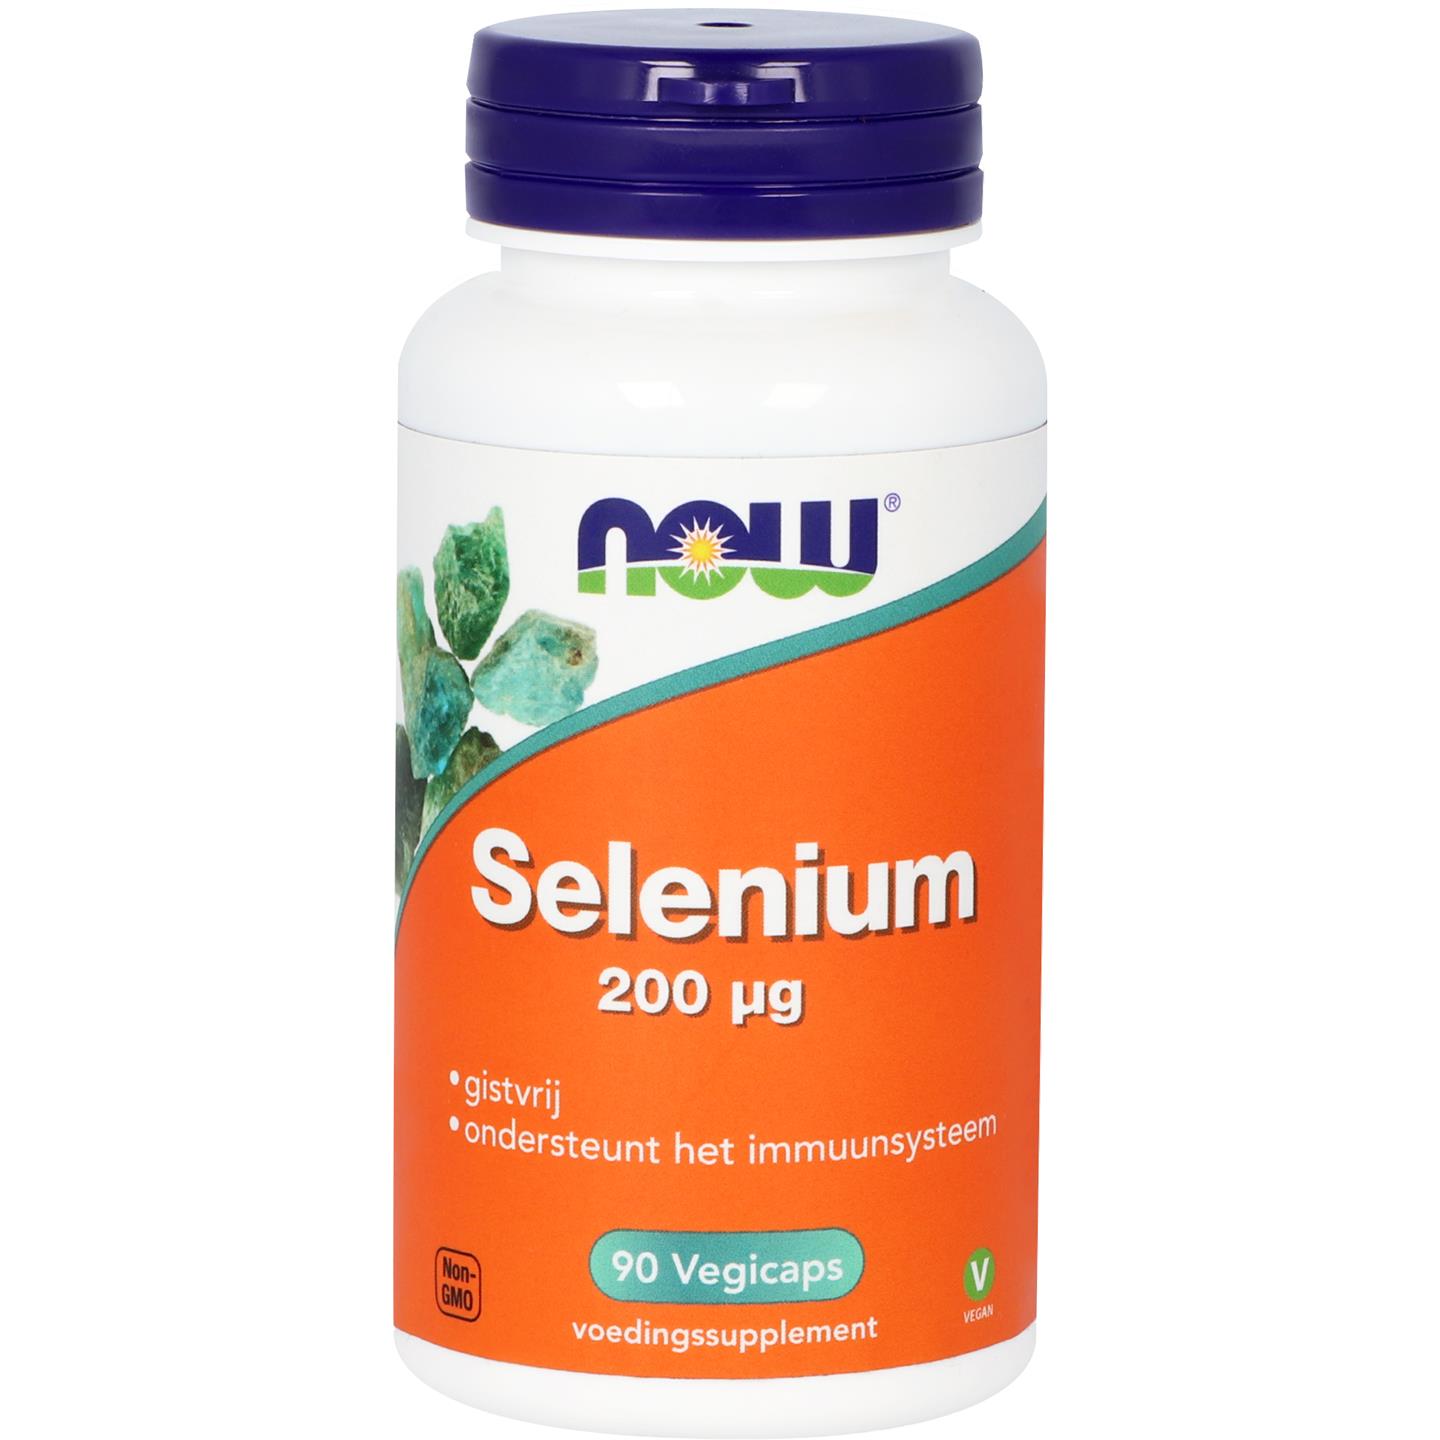 Import selenium. Selenium. Selenium германский. Русский Selenium. Selenium производитель Канада.